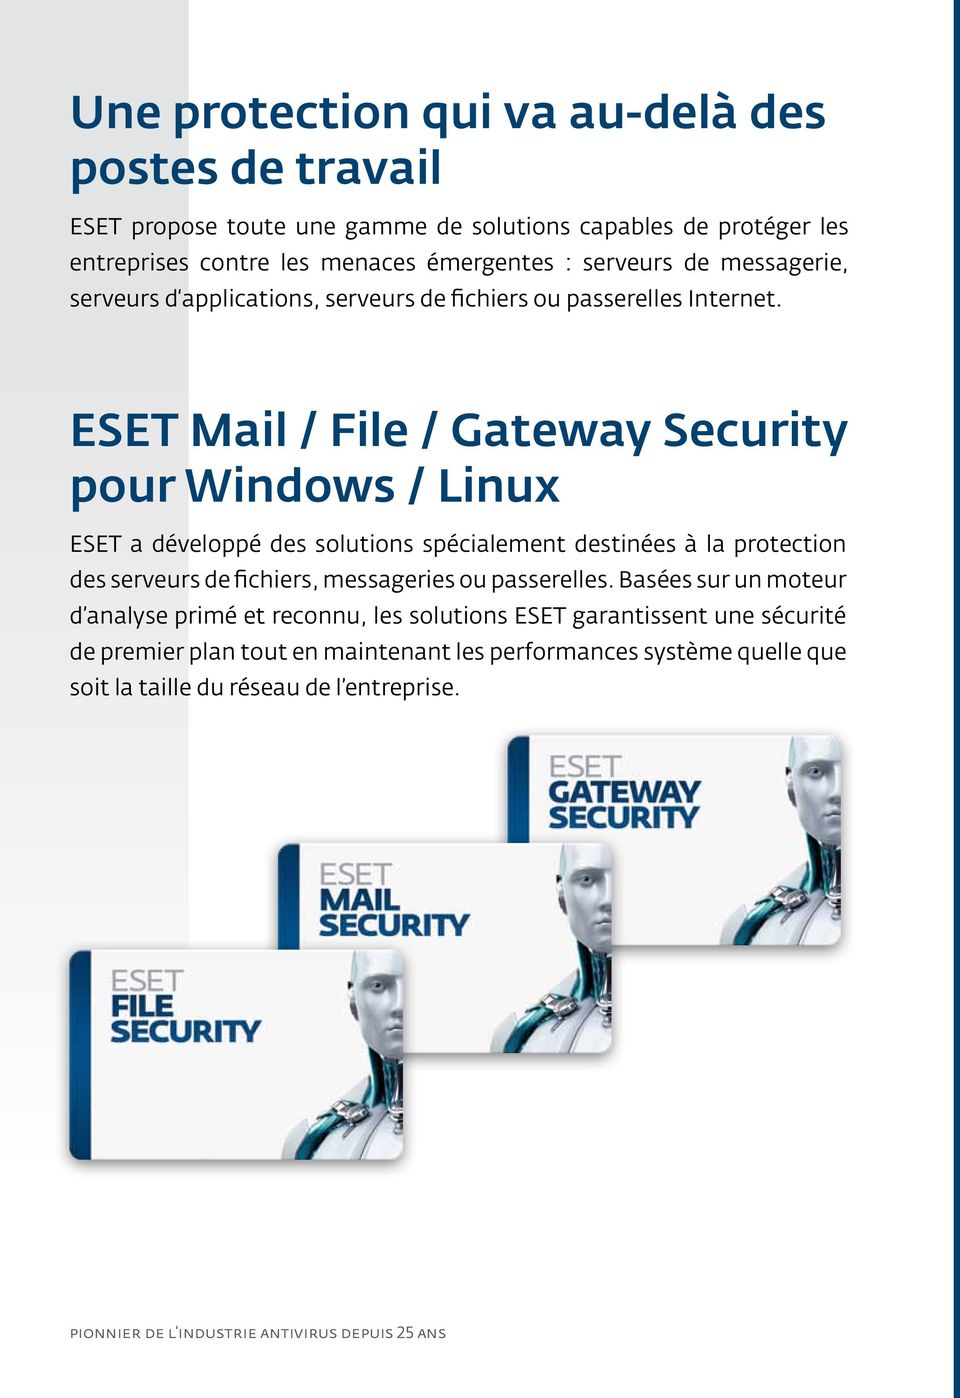 ESET Mail / File / Gateway Security pour Windows / Linux ESET a développé des solutions spécialement destinées à la protection des serveurs de fichiers, messageries ou